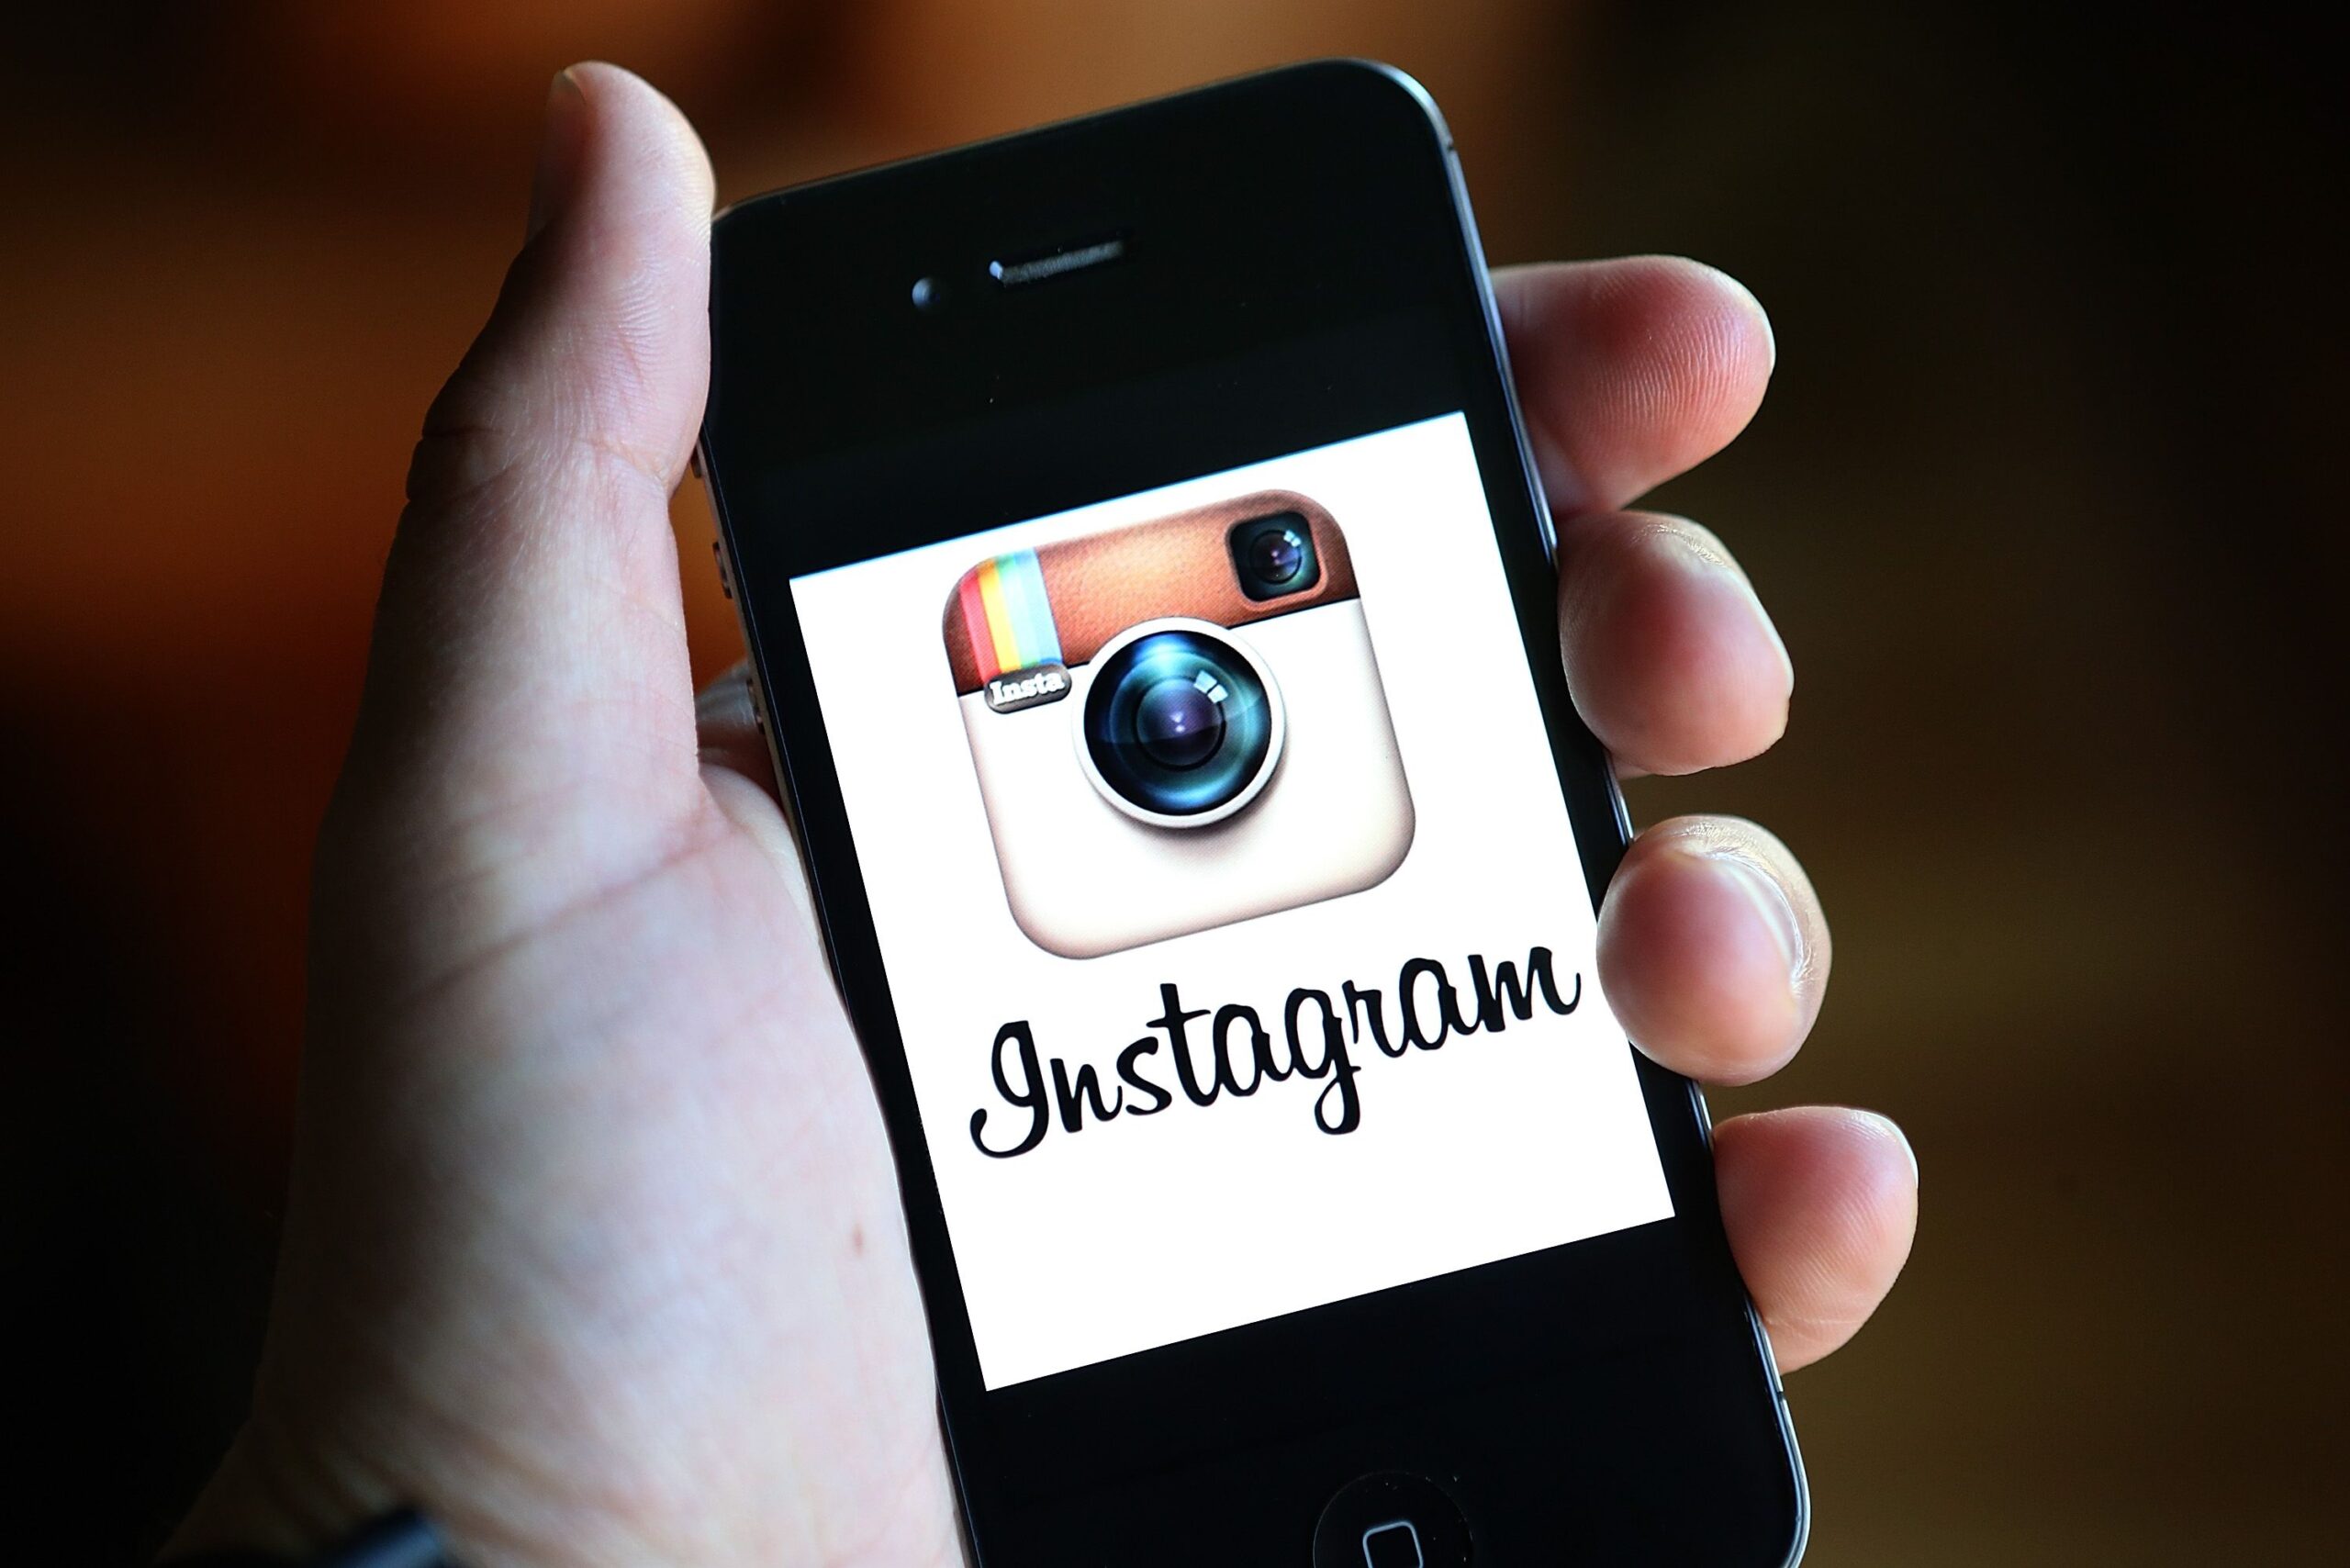 Se salvate le foto da altri account Instagram, sappiate che lo scopriranno